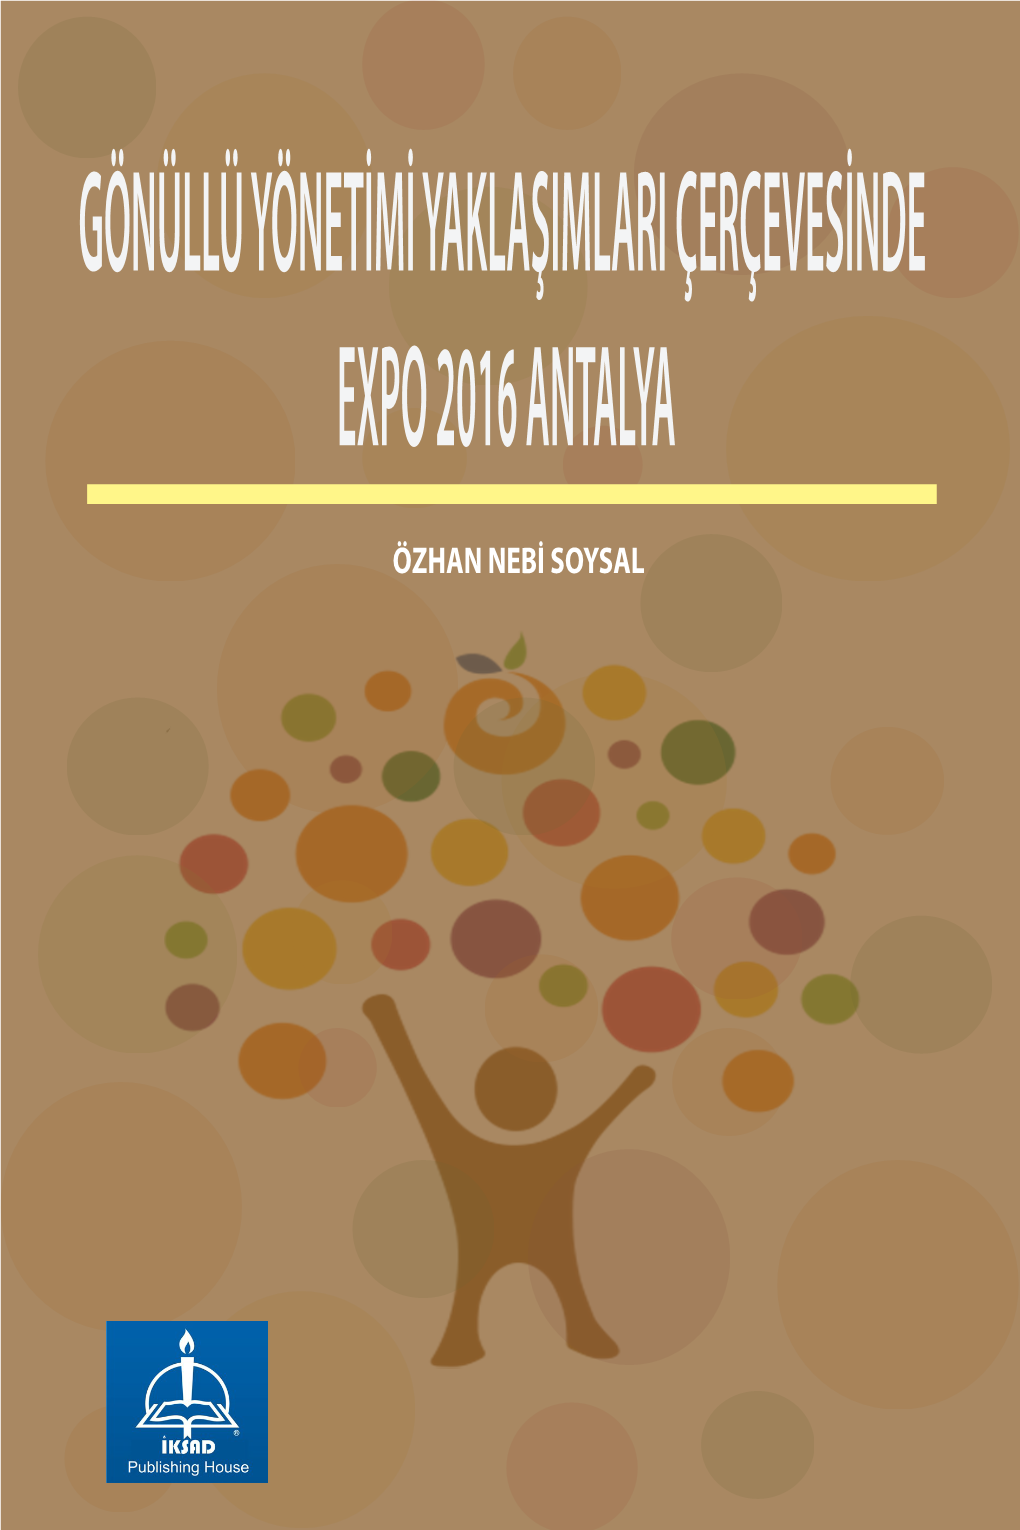 Gönüllü Yönetimi Yaklaşımları Çerçevesinde Expo 2016 Antalya